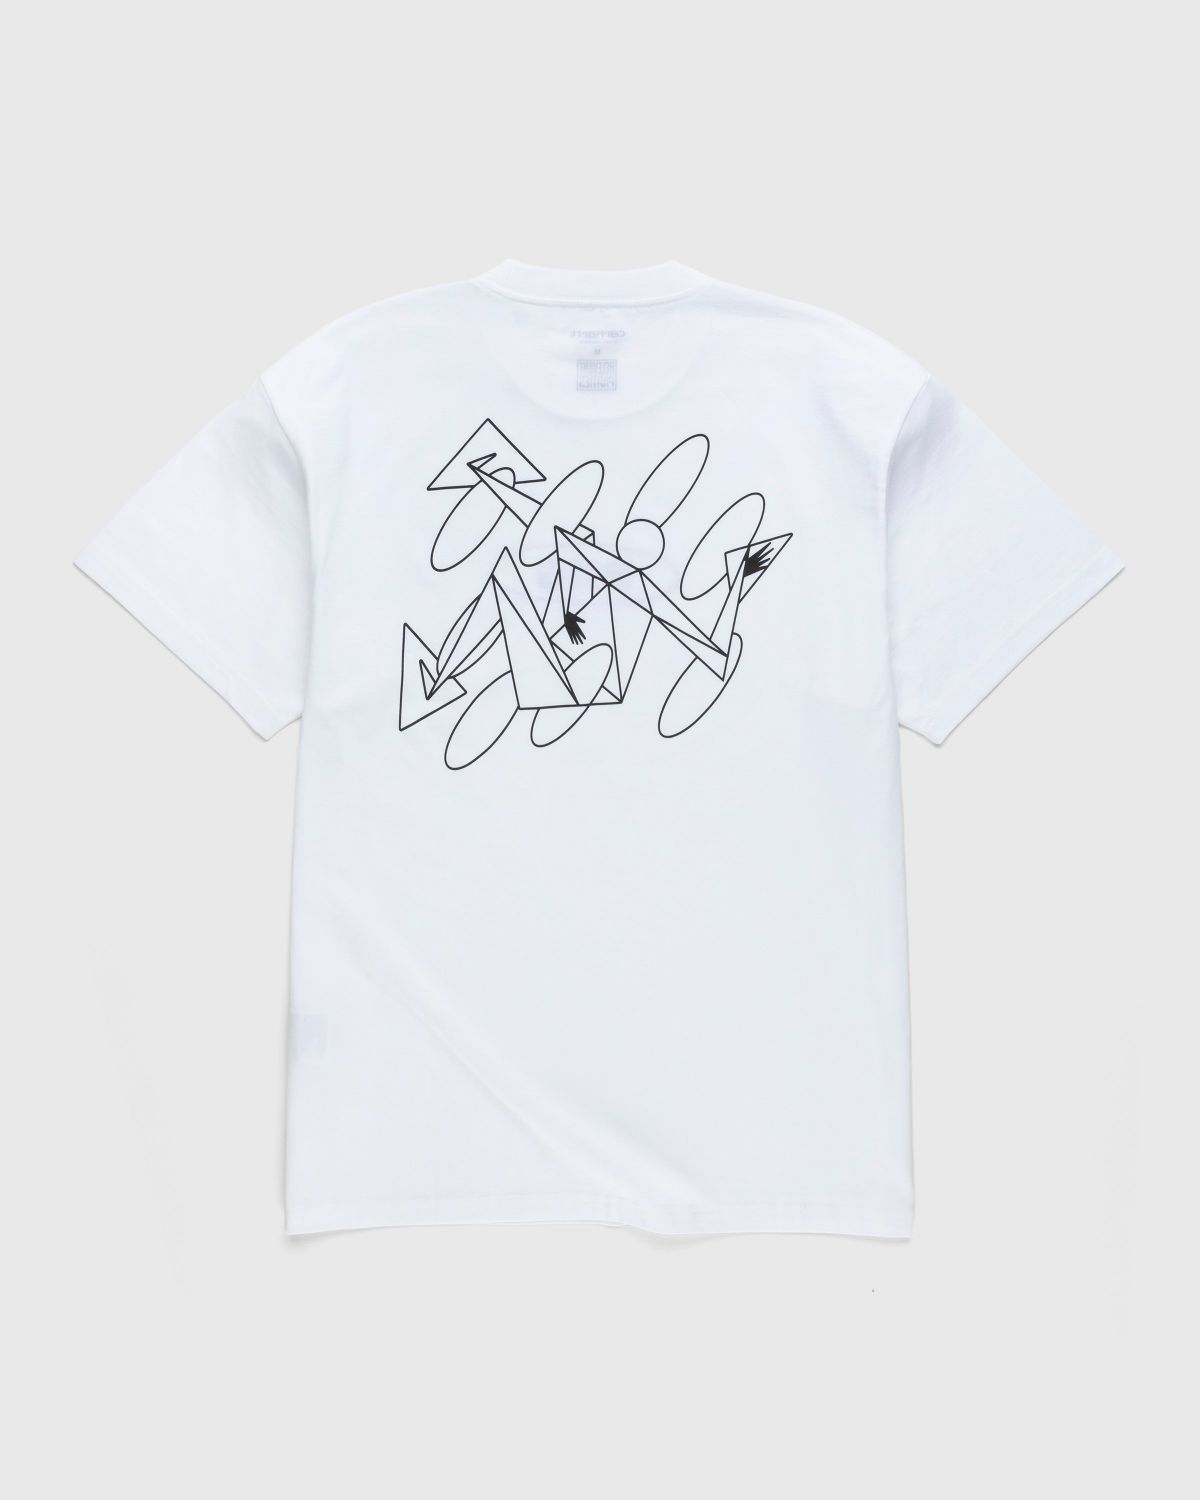 Carhartt WIP – Rush Hour T-Shirt White/Black - T-shirts - White - Image 2